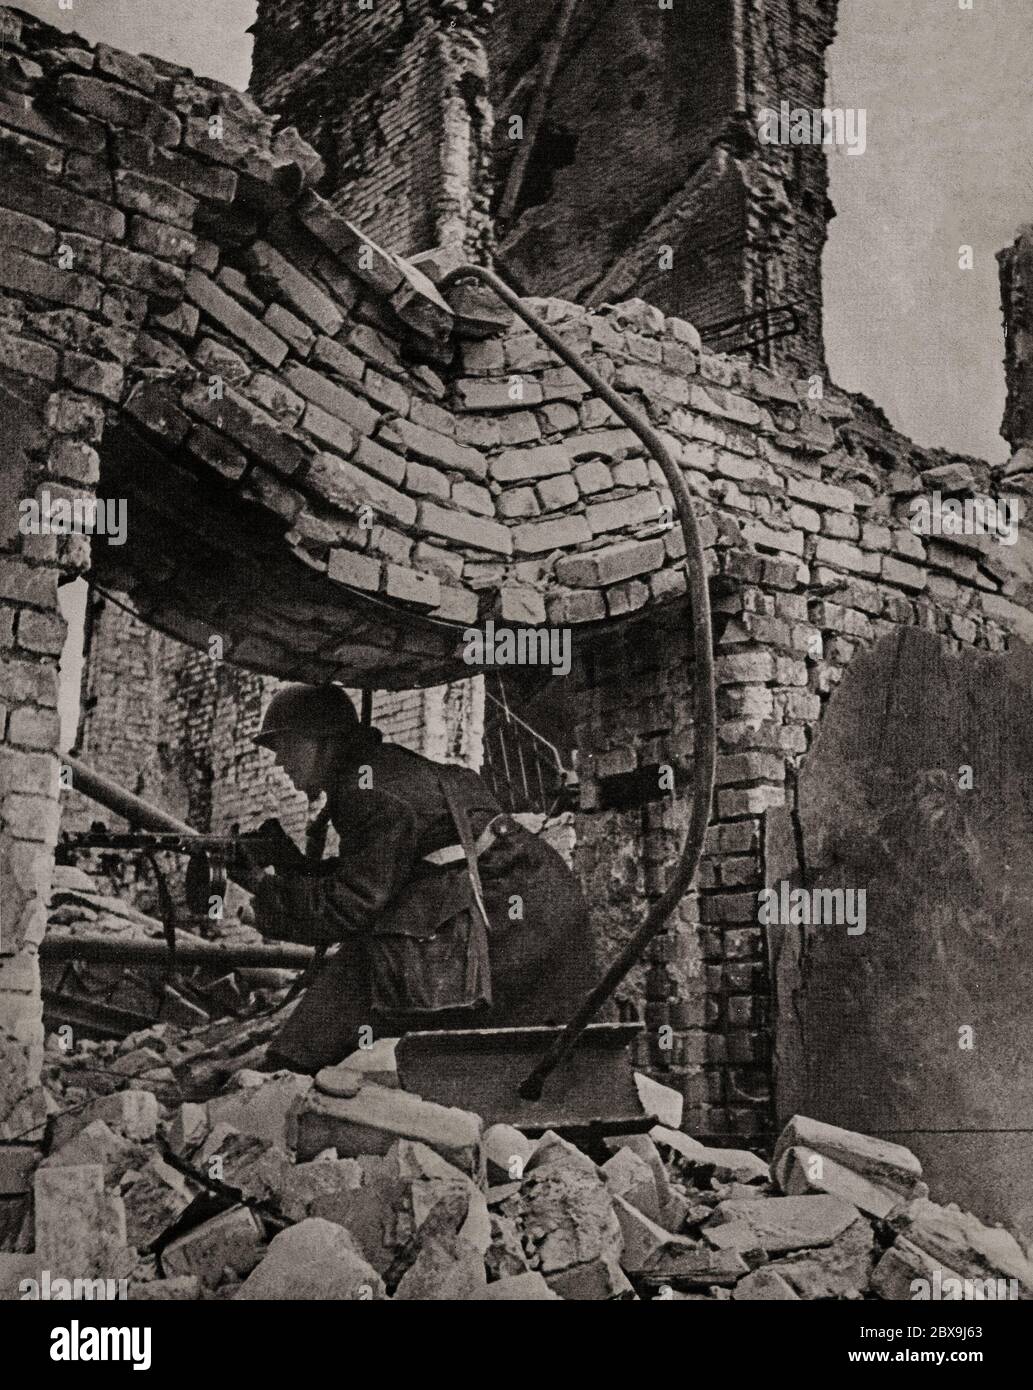 Un soldat allemand dans son pays pour se battre pendant la bataille de Stalingrad (1942-1943), lorsque l'Allemagne et ses alliés ont combattu l'Union soviétique pour le contrôle de la ville de Stalingrad (aujourd'hui Volgograd) dans le sud de la Russie. Elle a été marquée par des combats féroces et des attaques directes contre des civils lors de raids aériens, au cours de l'une des batailles les plus sanglantes de l'histoire de la guerre, avec un total estimé à 2 millions de victimes. Banque D'Images